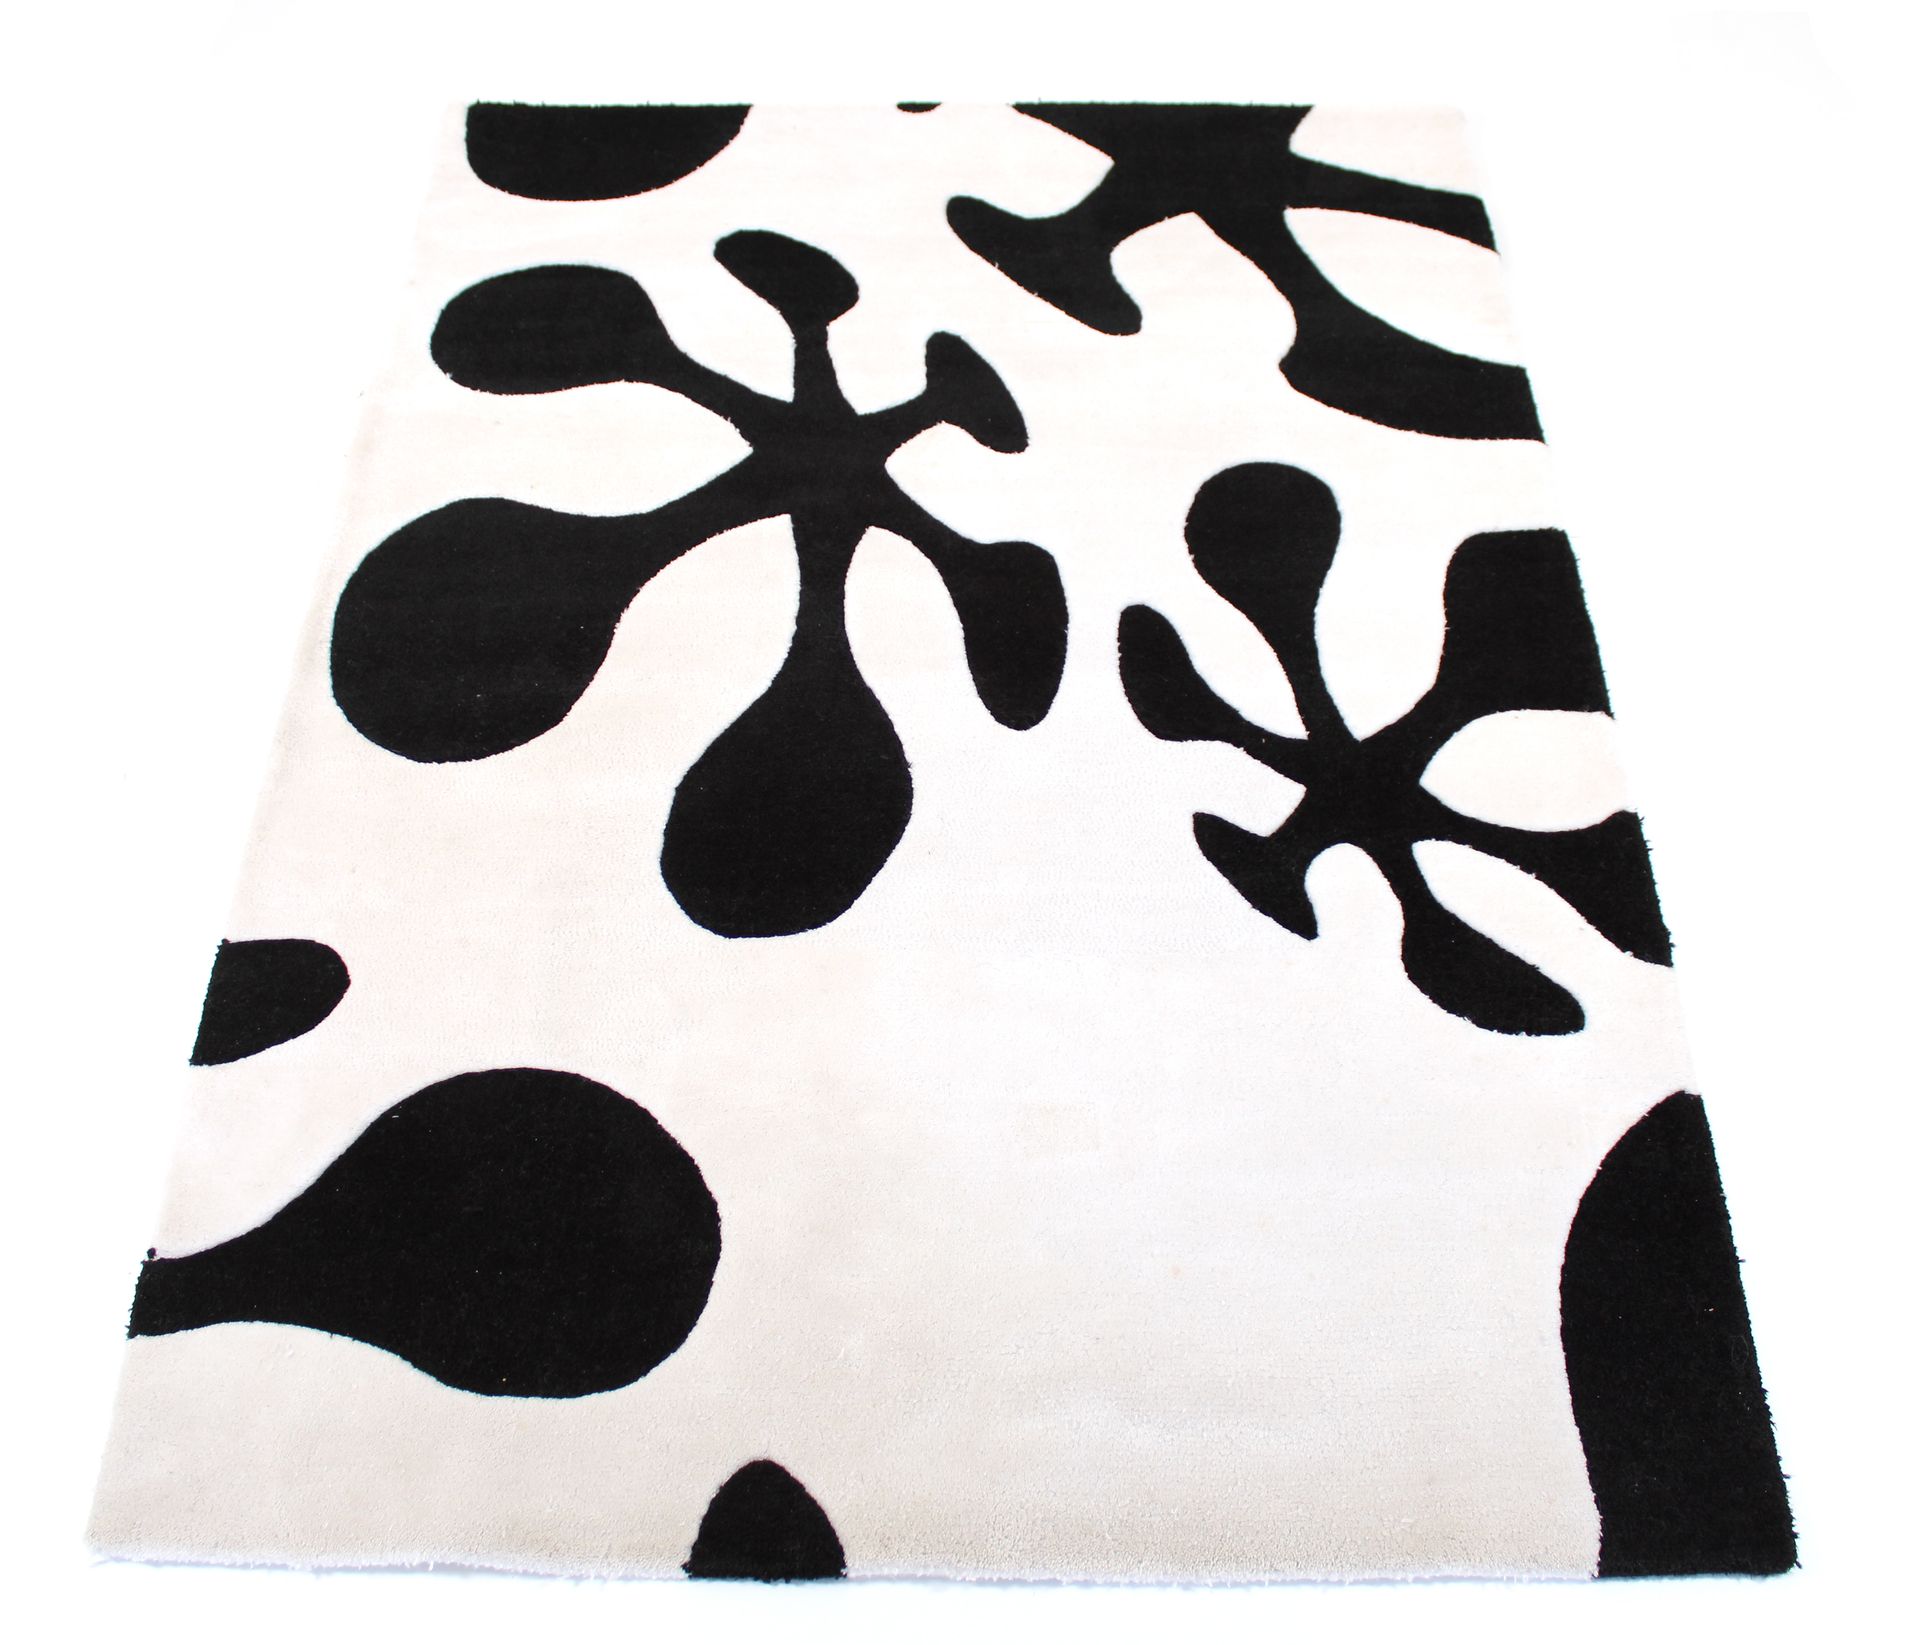 Null Tappeto con motivi stilizzati neri su sfondo bianco

200 x 143 cm